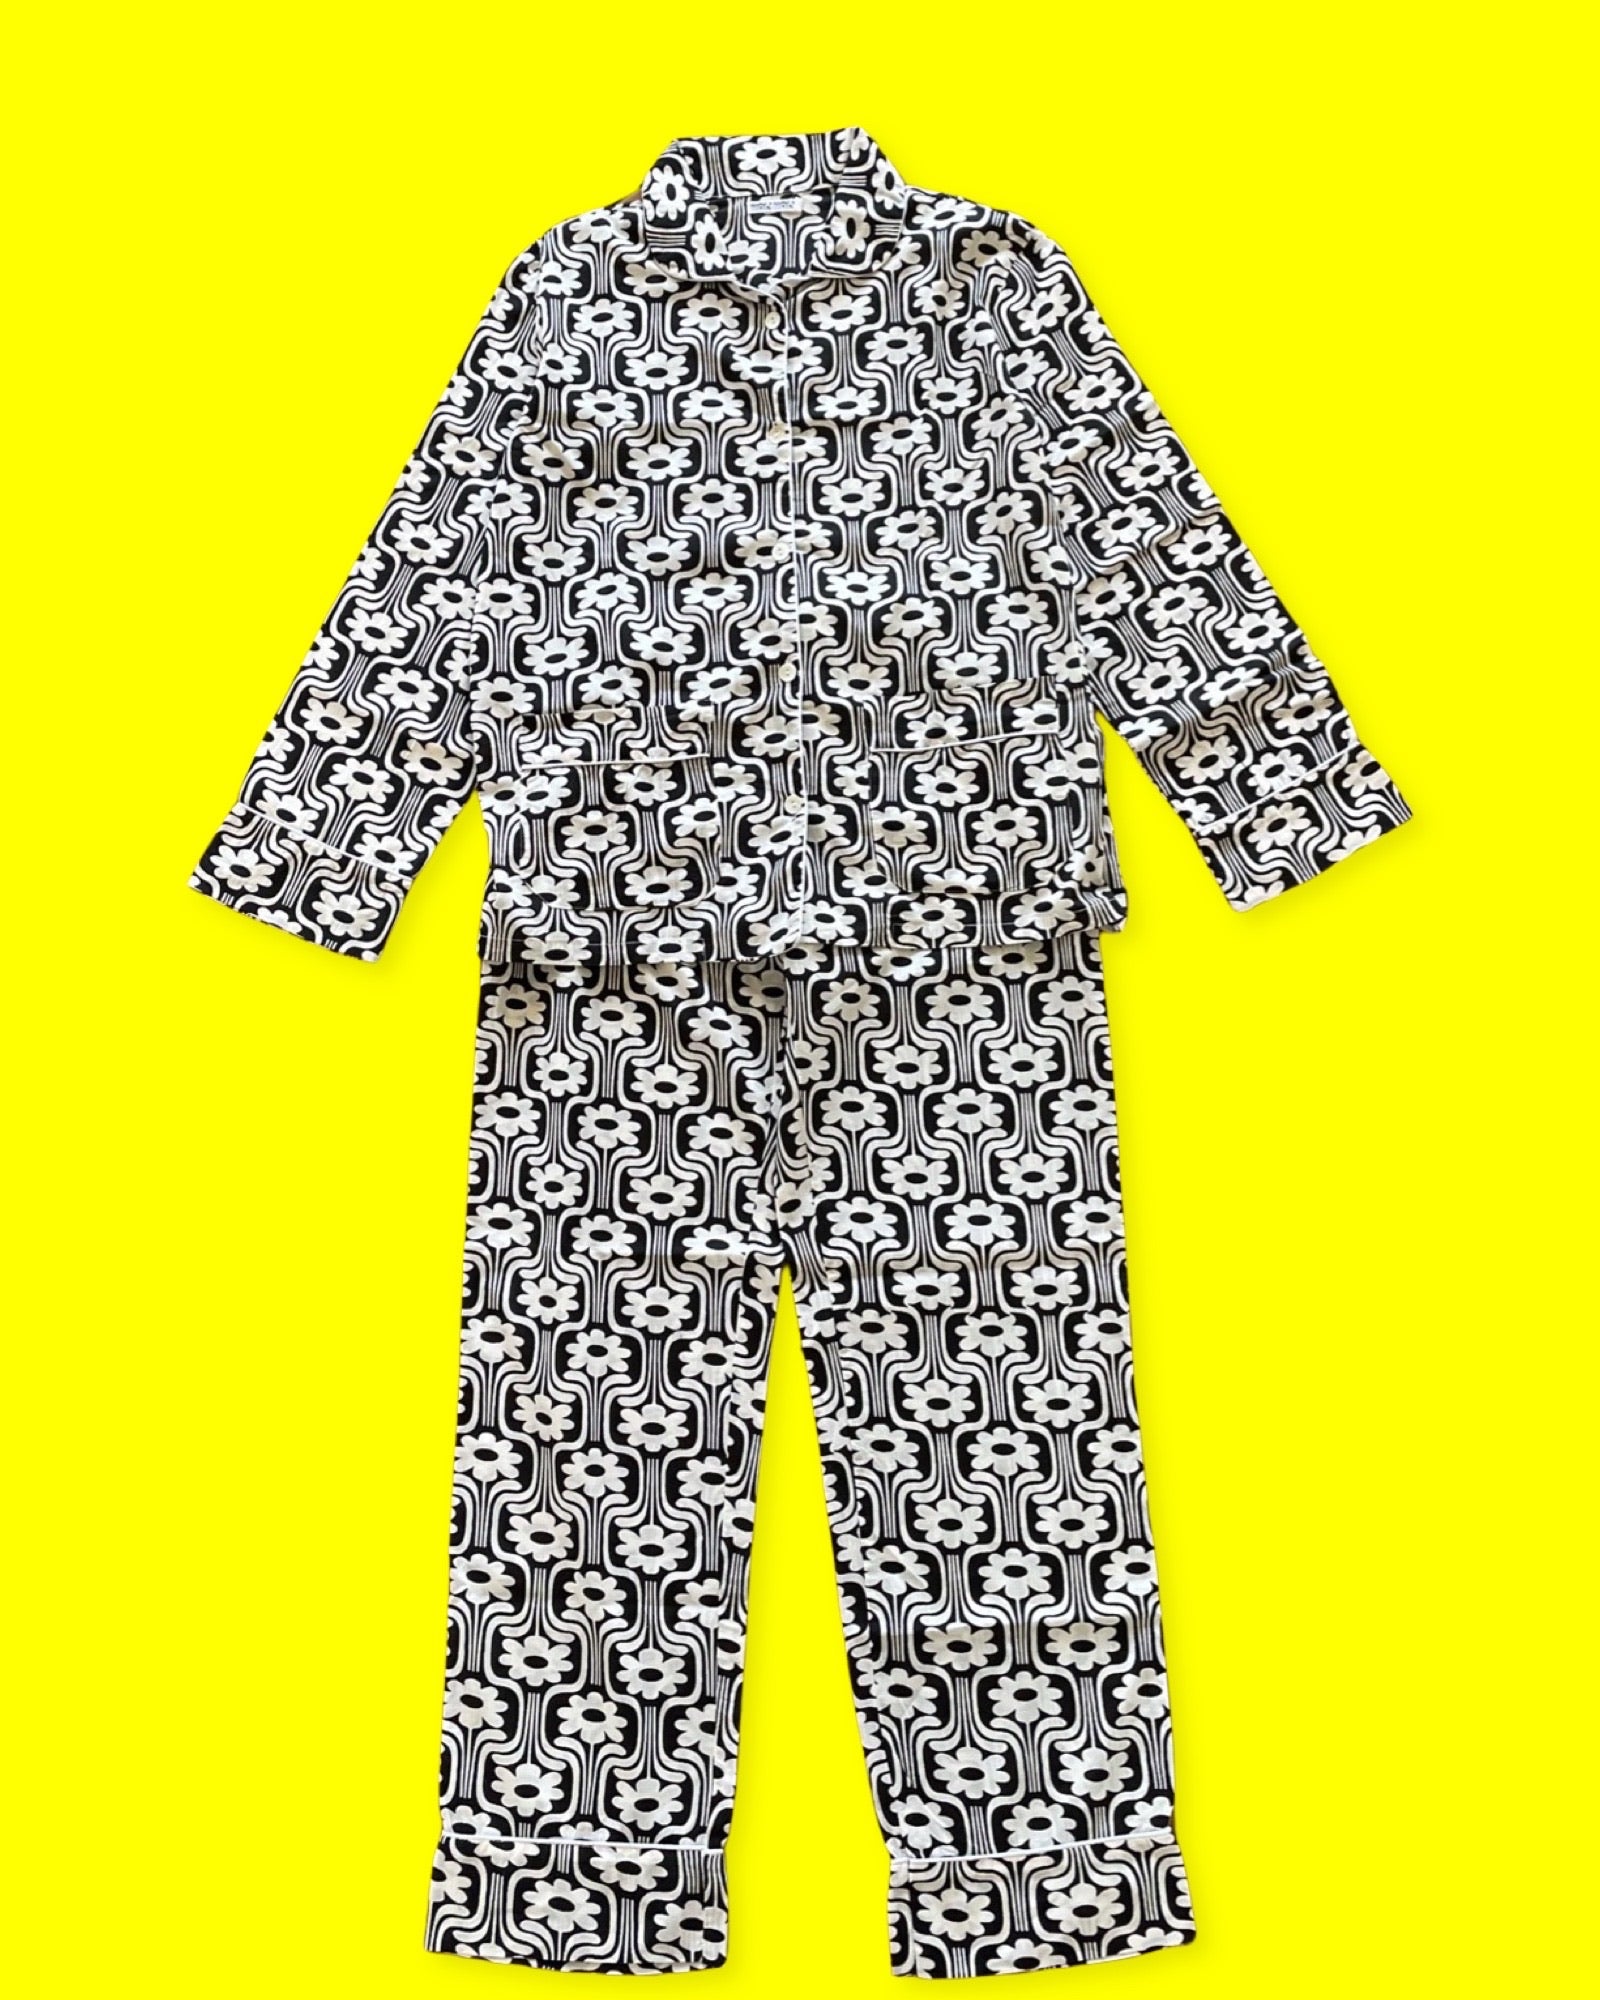 Notre pyjama pour homme 70's est un ensemble composé d'un haut boutonné à manches longues avec deux poches et d'un pantalon à taille élastique et à lien. L'imprimé est rétro vec des fleurs blanches sur fond noir, et le liseré est blanc. La photo le présente sur fond jaune.